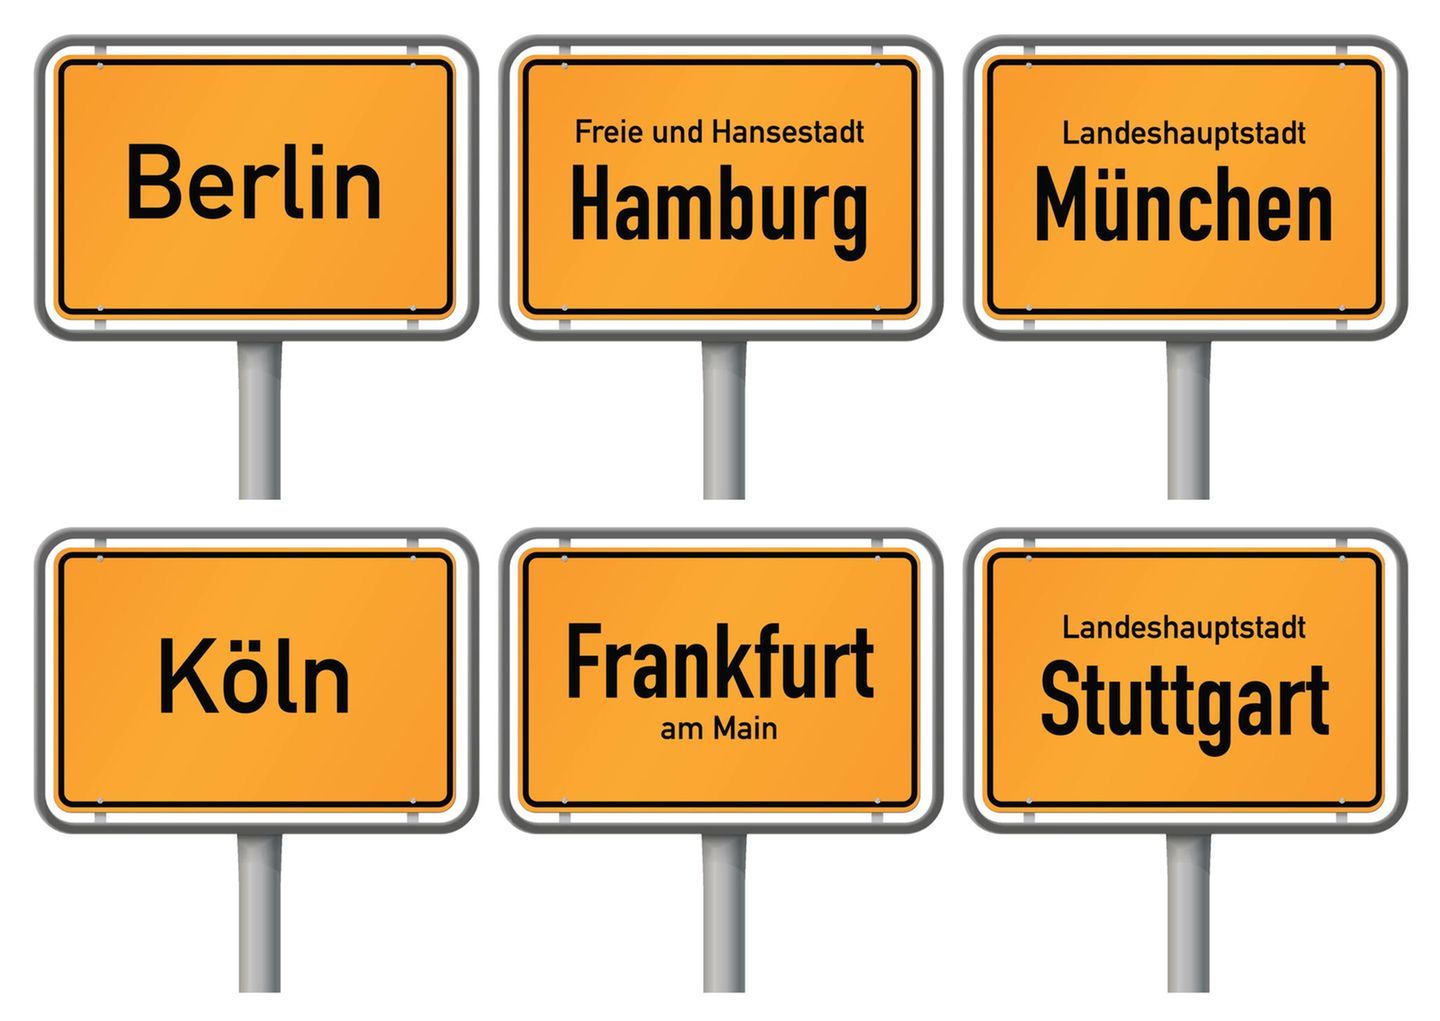 Welche Stadt hat am meisten Ladesäulen?  Das hängt von der Betrachtungsweise ab. In den Großstädten wächst die Zahl der Ladesäulen nur noch langsam, die kleineres Städte holen dagegen stark auf. Bei den Metropolen ist Berlin mit  rund 1.800 öffentlichen Ladepunkten führend. Darauf folgen München mit 1.327 und Hamburg mit 1.214 Ladesäulen.  Gemessen an Ladesäulen auf 100.000 Einwohner ändert sich das Ranking: Hier rutscht Berlin mit 49 Ladesäulen auf 100.000 Einwohner auf den letzten Platz. München mit erklimmt 89 öffentlichen Ladepunkten auf 100.000 Einwohner die Top-Position. Die Plätze zwei und drei nehmen Stuttgart mit 81 Ladesäulen und Essen mit 73 Ladepunkten ein.   Geradezu beeindruckend wird die Ladesäulendichte bei Städten mit 100.000 bis 500.000 Einwohnern. VW sichert Wolfsburg mit 493 Ladepunkten die Spitzenposition, darauf folgen das beschauliche Regensburg mit 282 Ladepunkten und Karlsruhe mit 260 Ladepunkten.